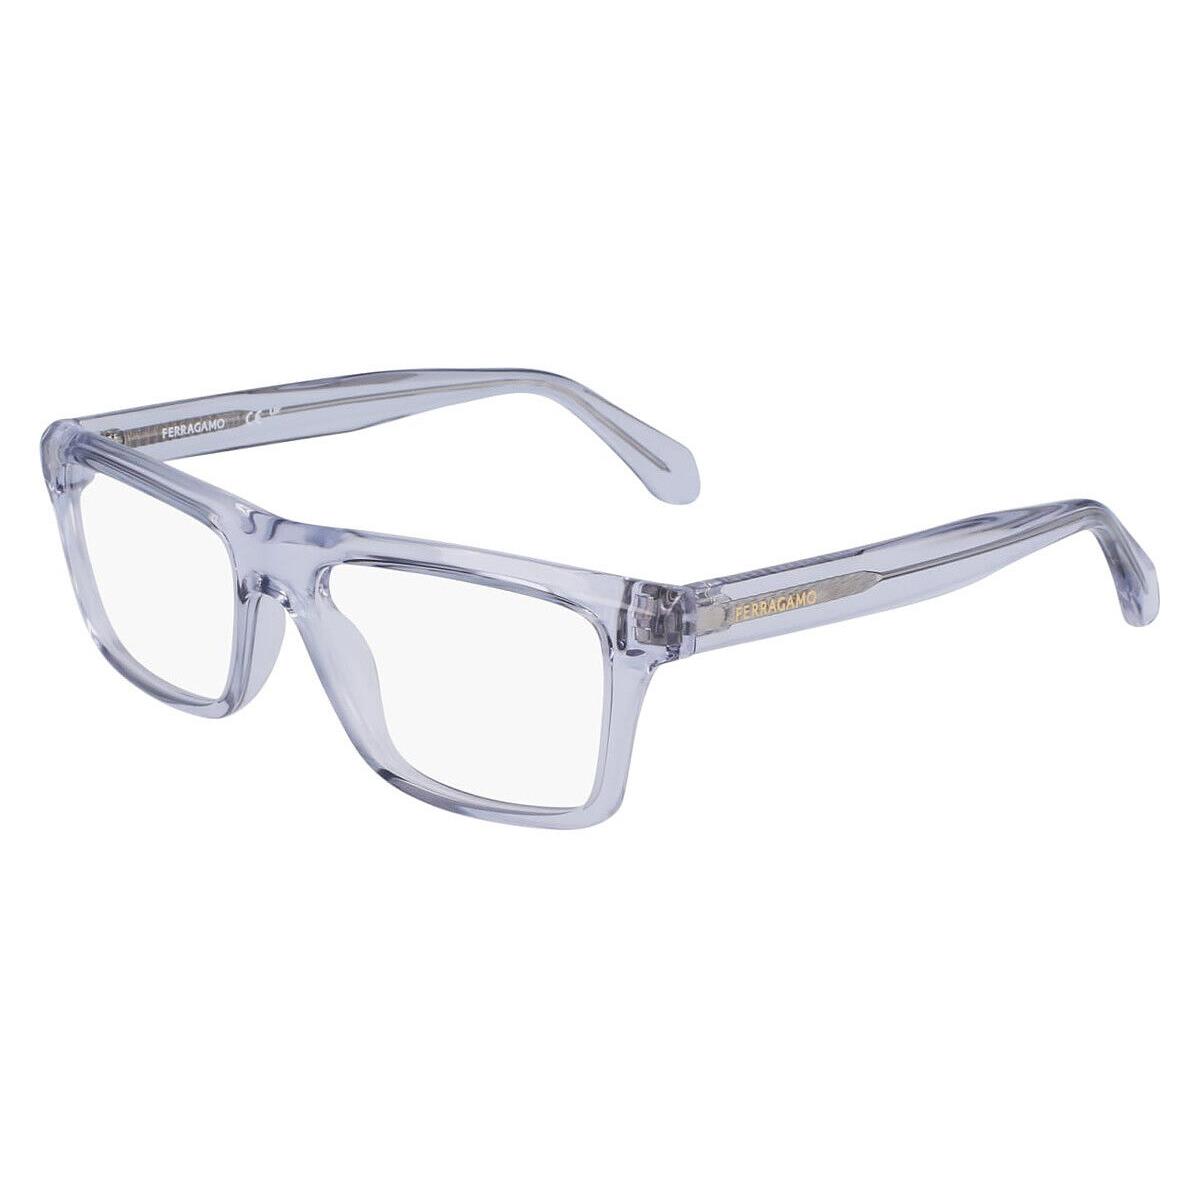 Salvatore Ferragamo SF2988 Eyeglasses Light Crystal Gray 54mm